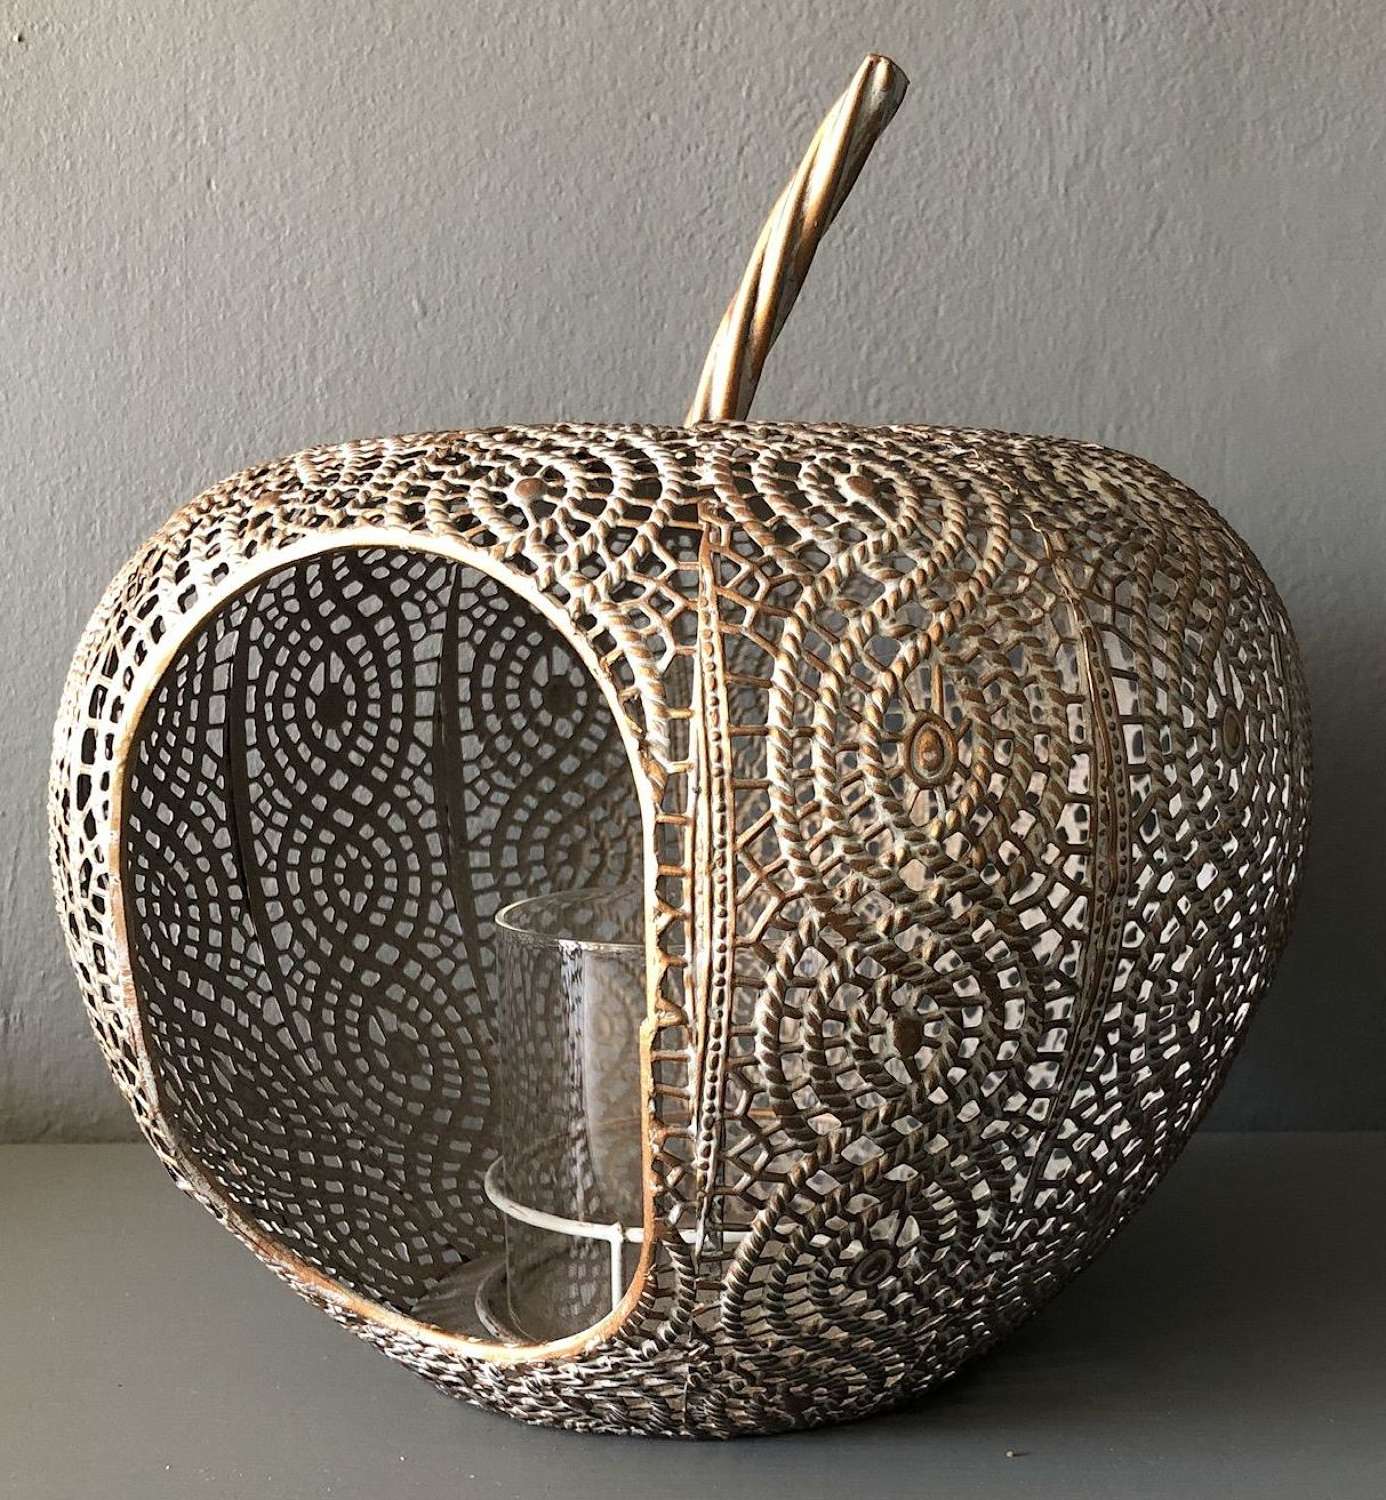 Metal apple lantern